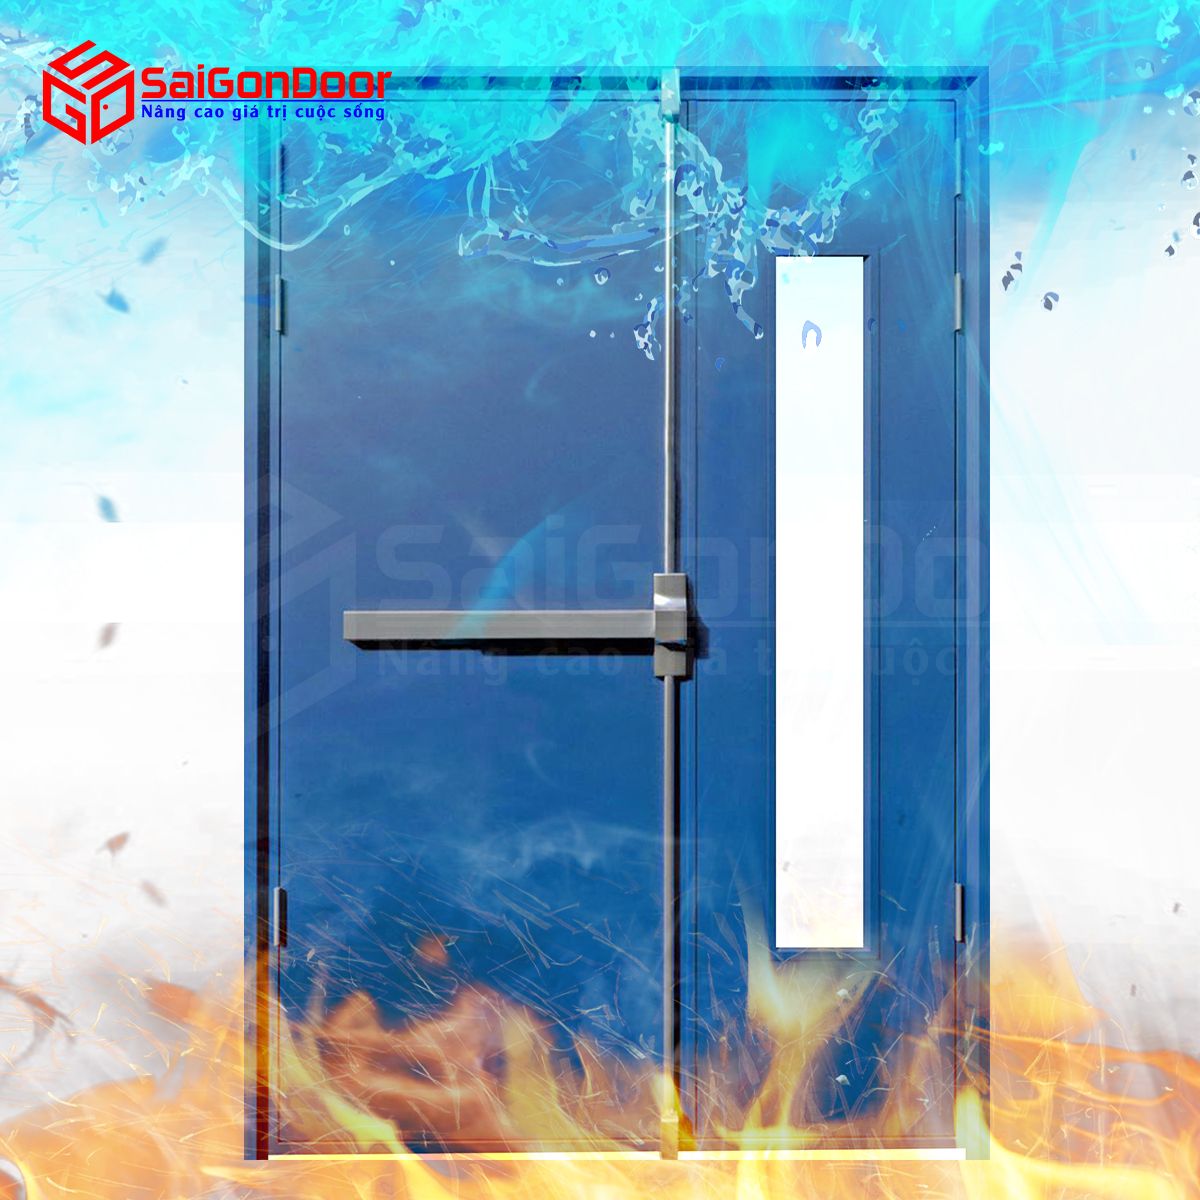 Cửa chống cháy giúp ngăn cháy hiệu quả, đảm bảo an toàn cho người và tài sản